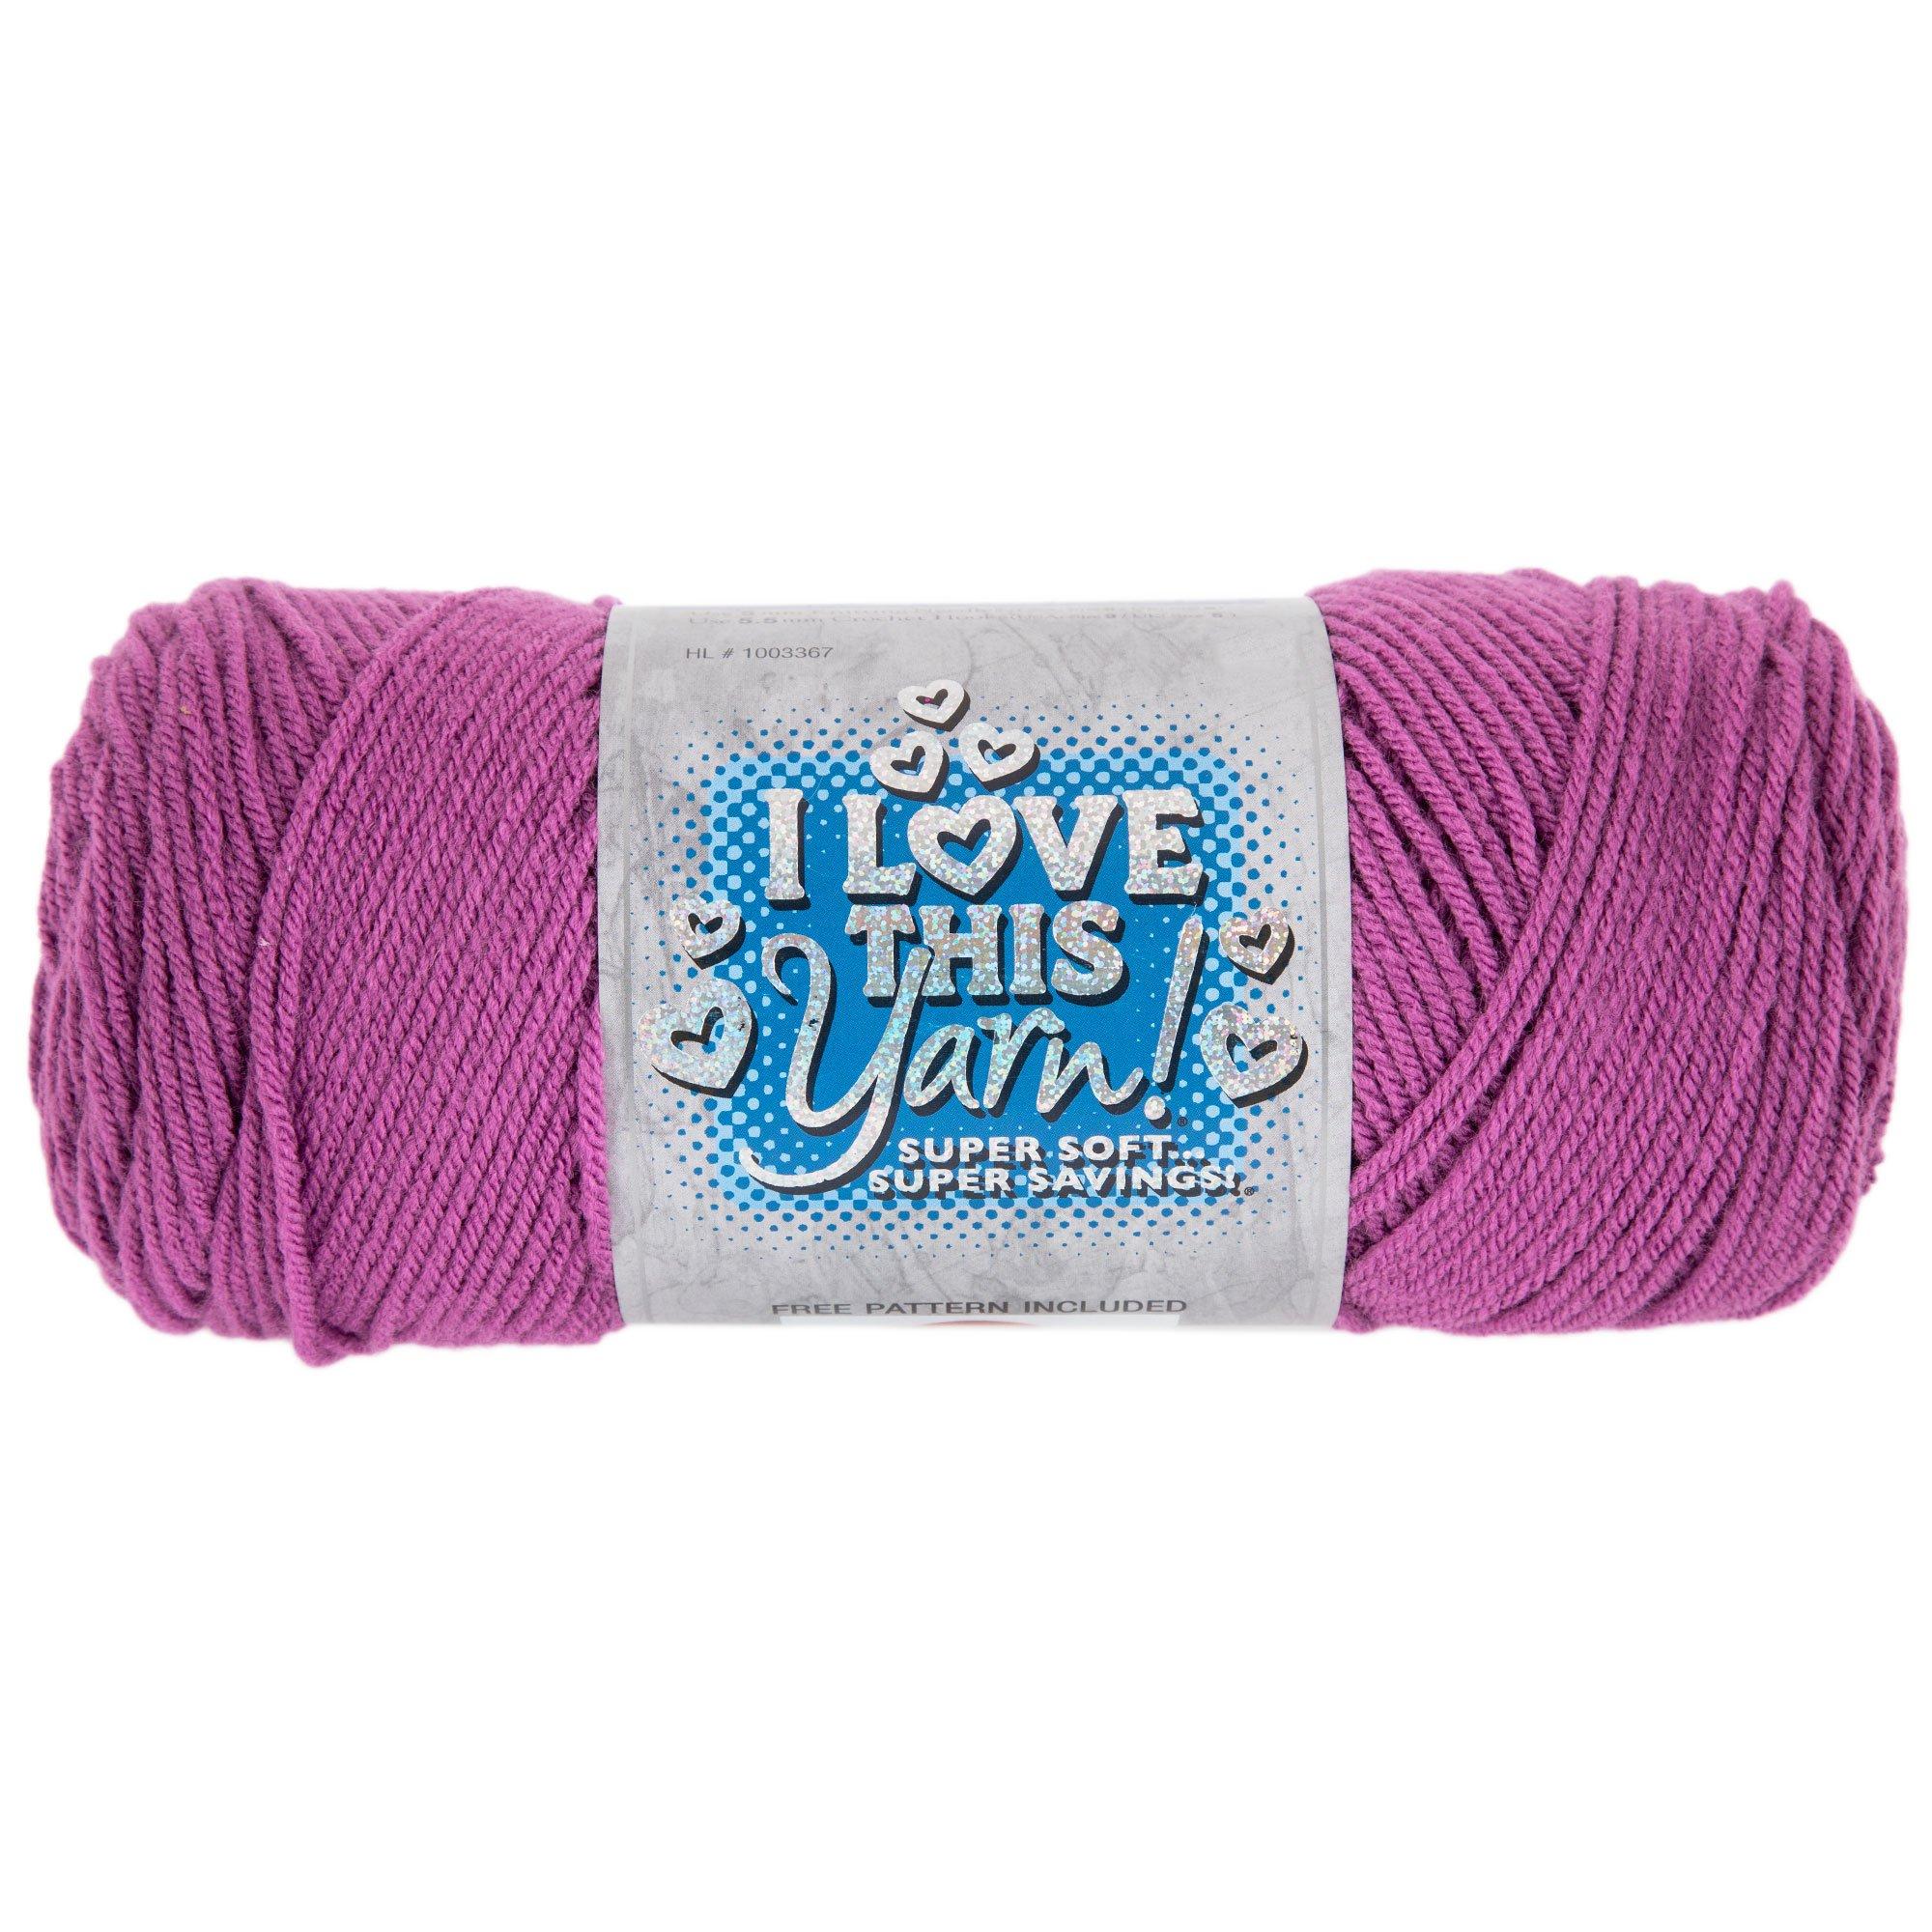 Hobby lobby clearance yarn! All between .99 & $1.75! : r/crochet